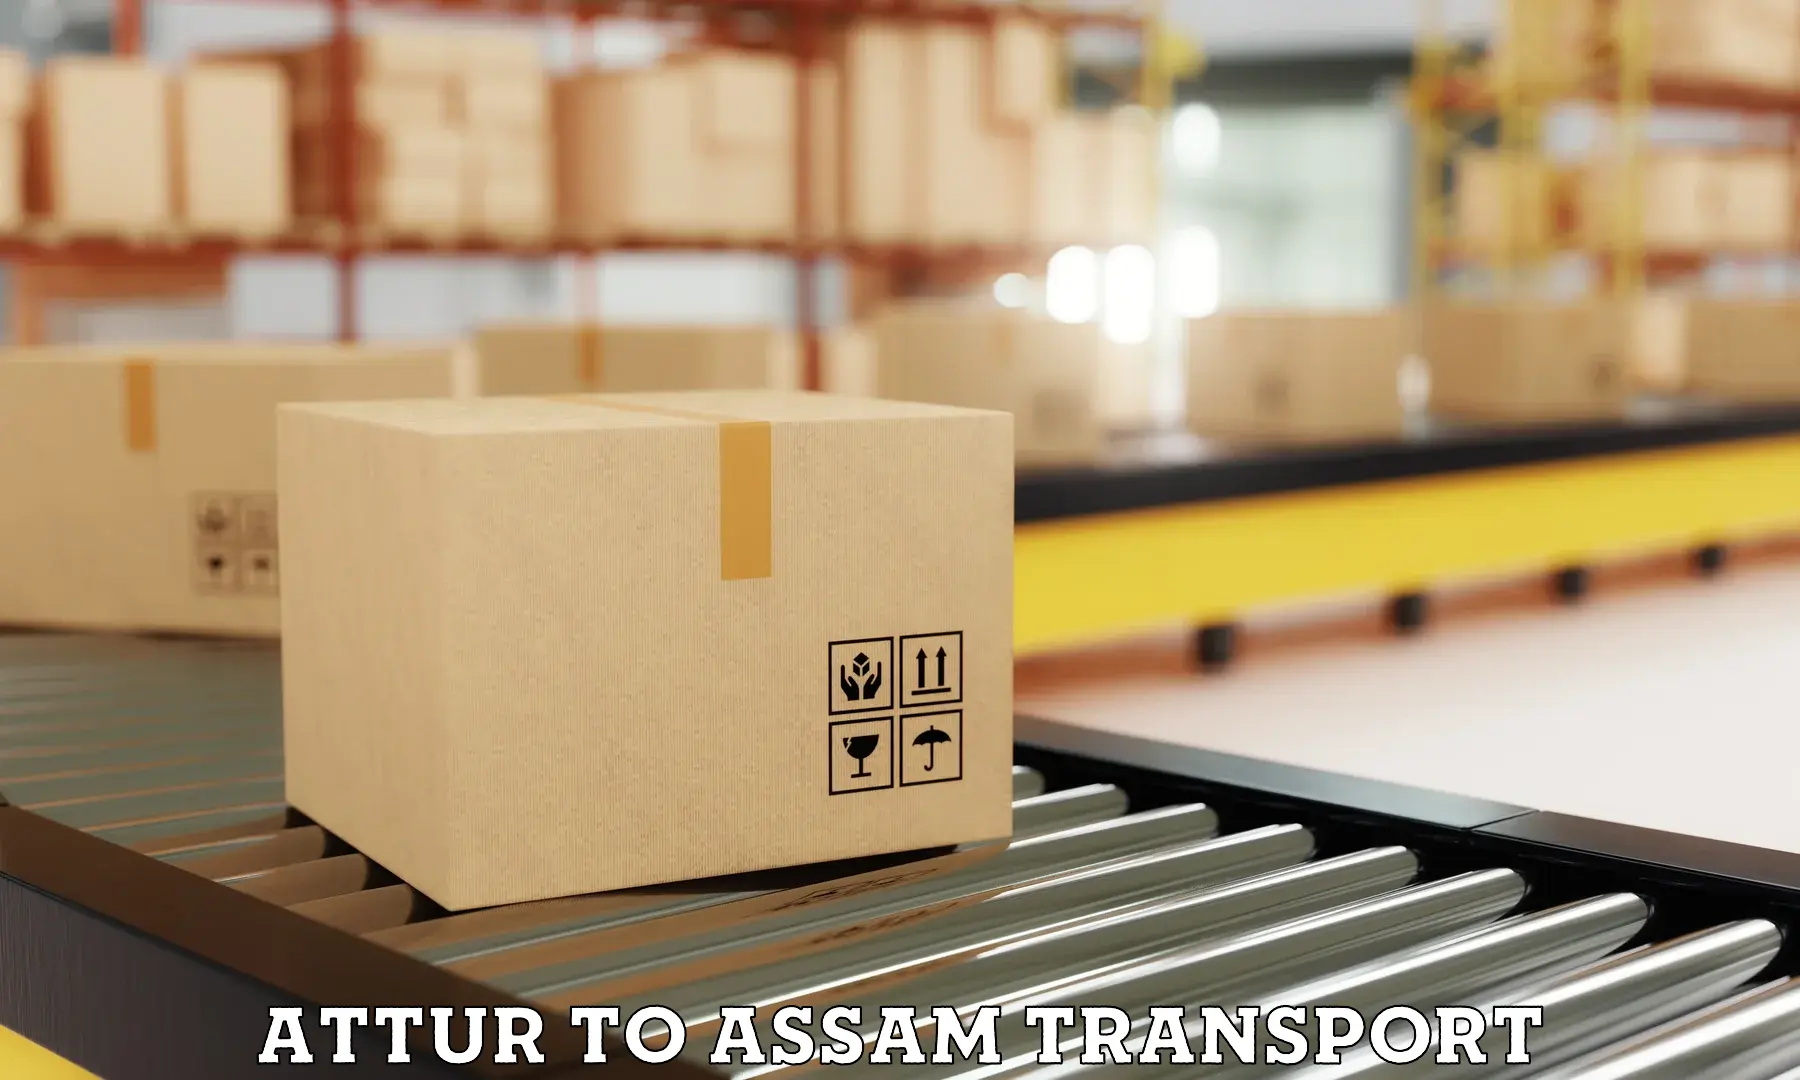 Nearest transport service Attur to Assam